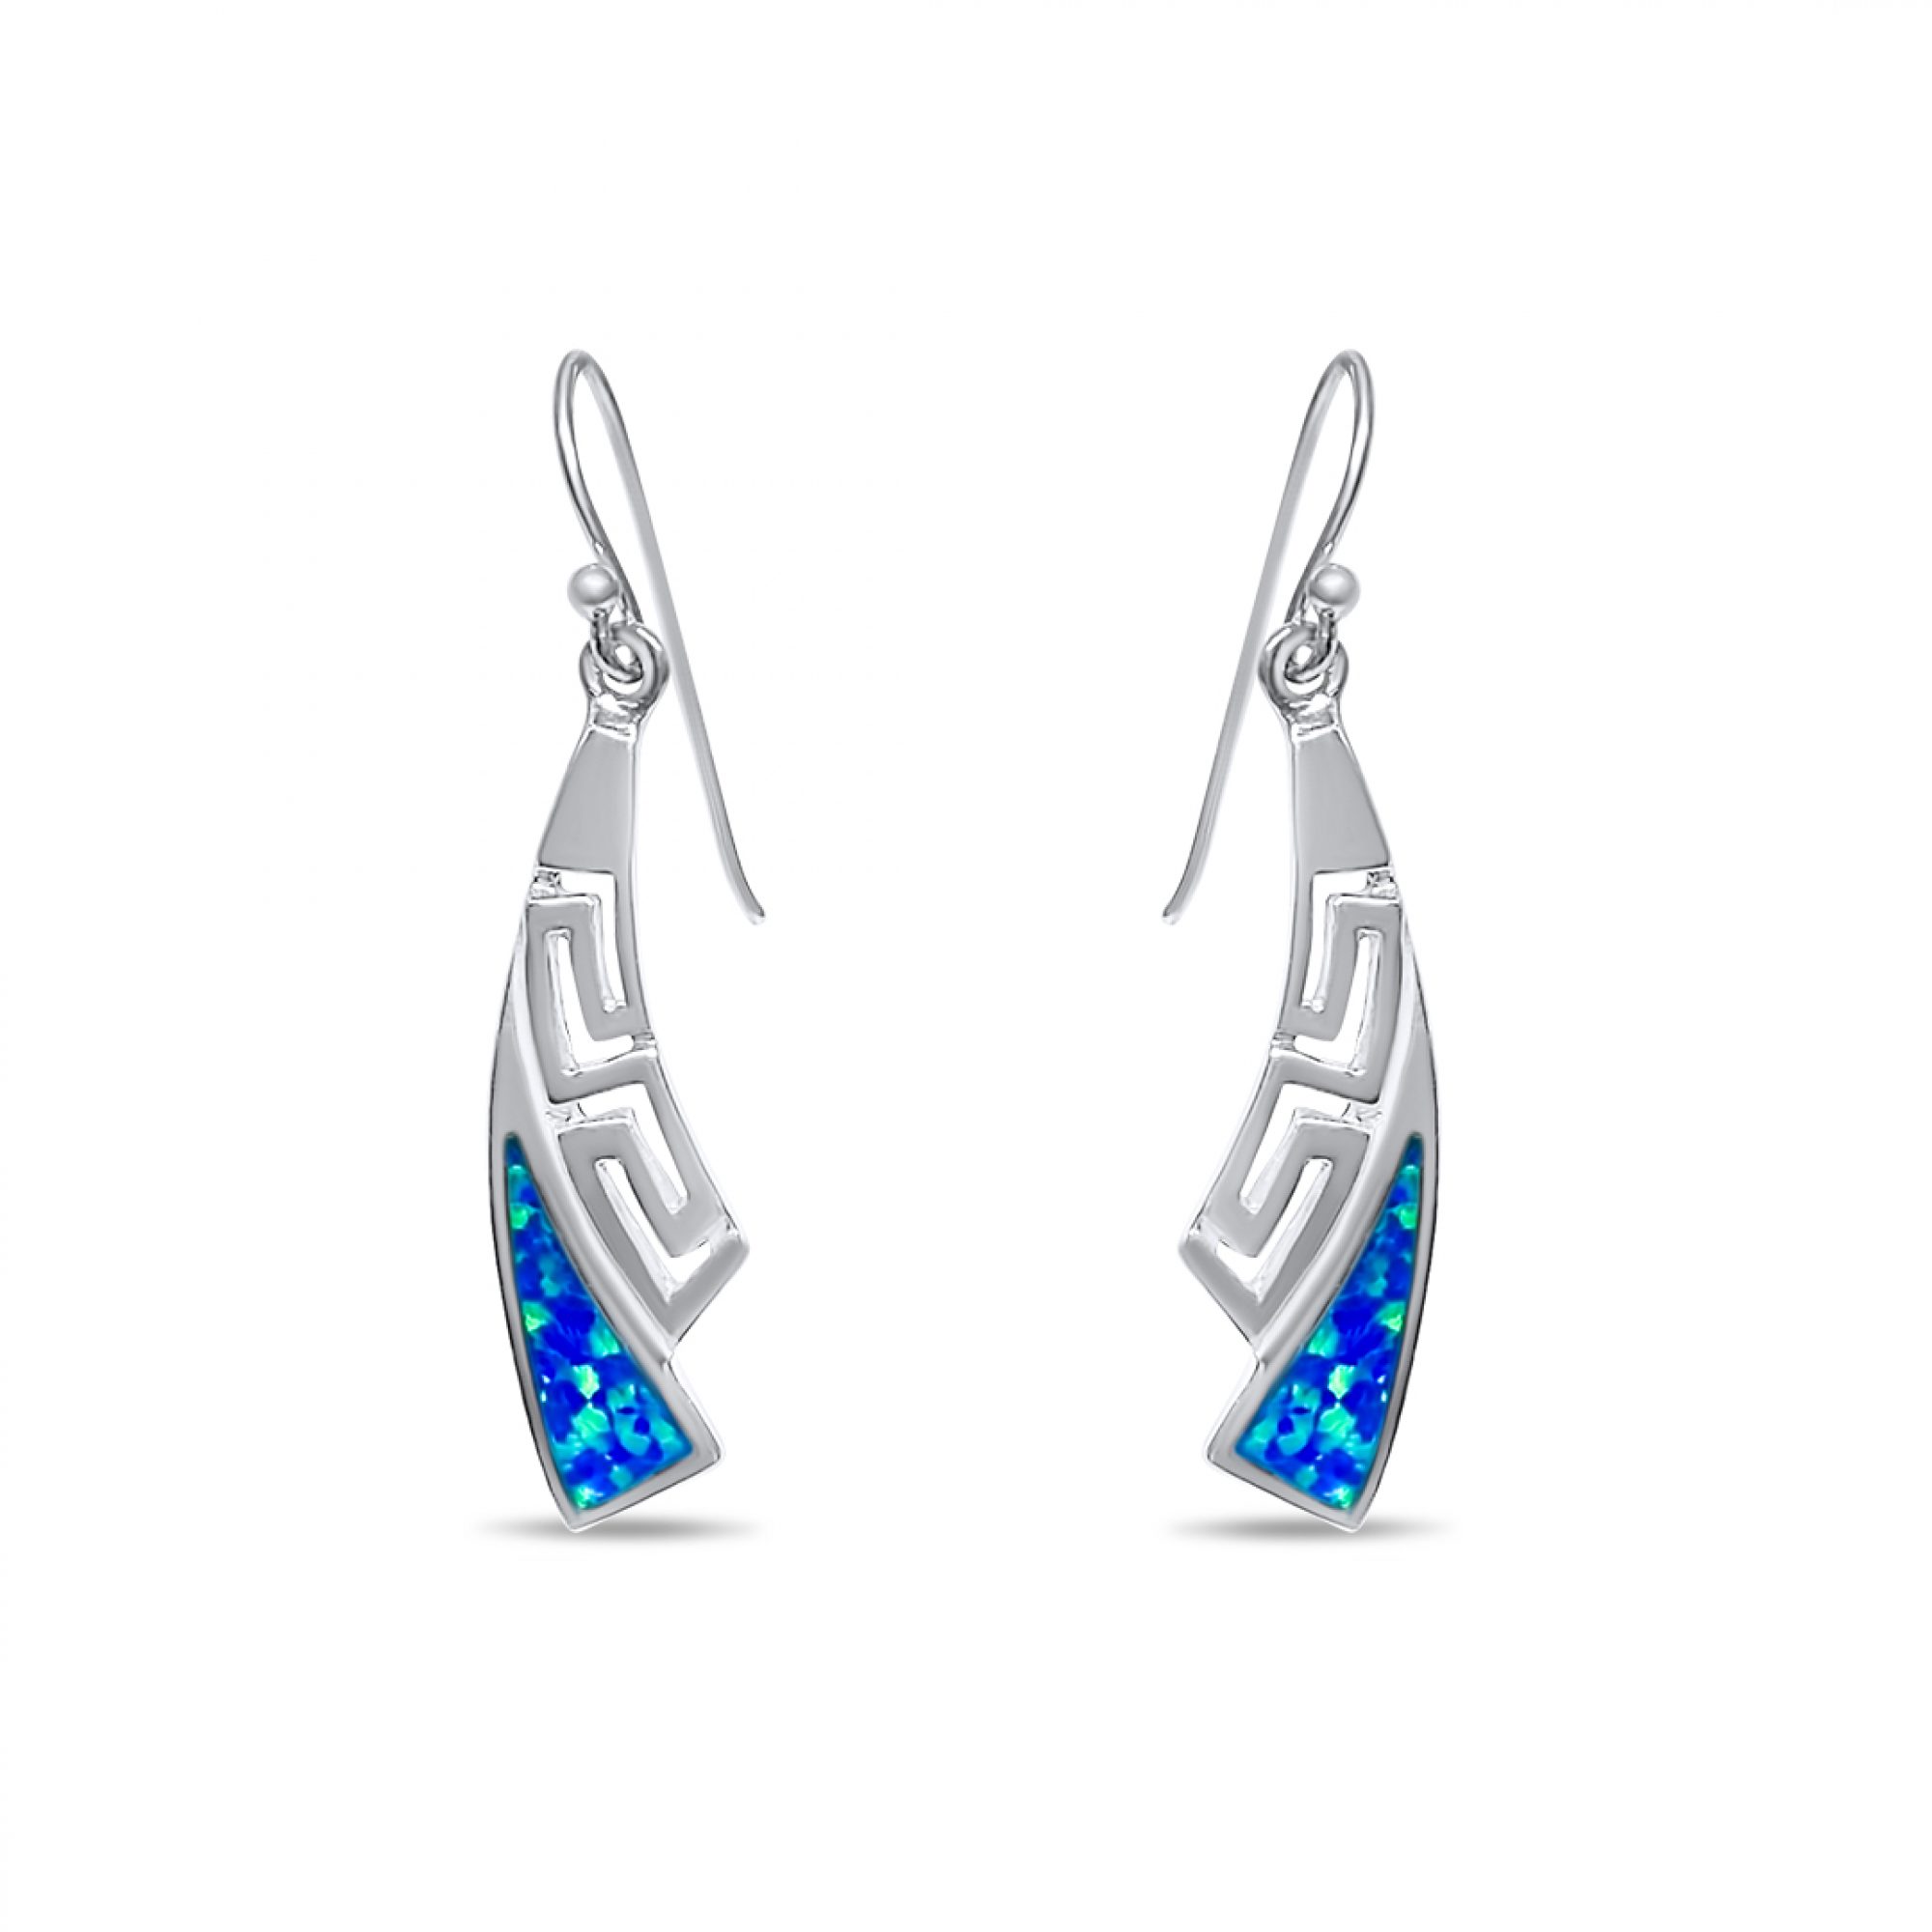 Dangle opal earrings with meander